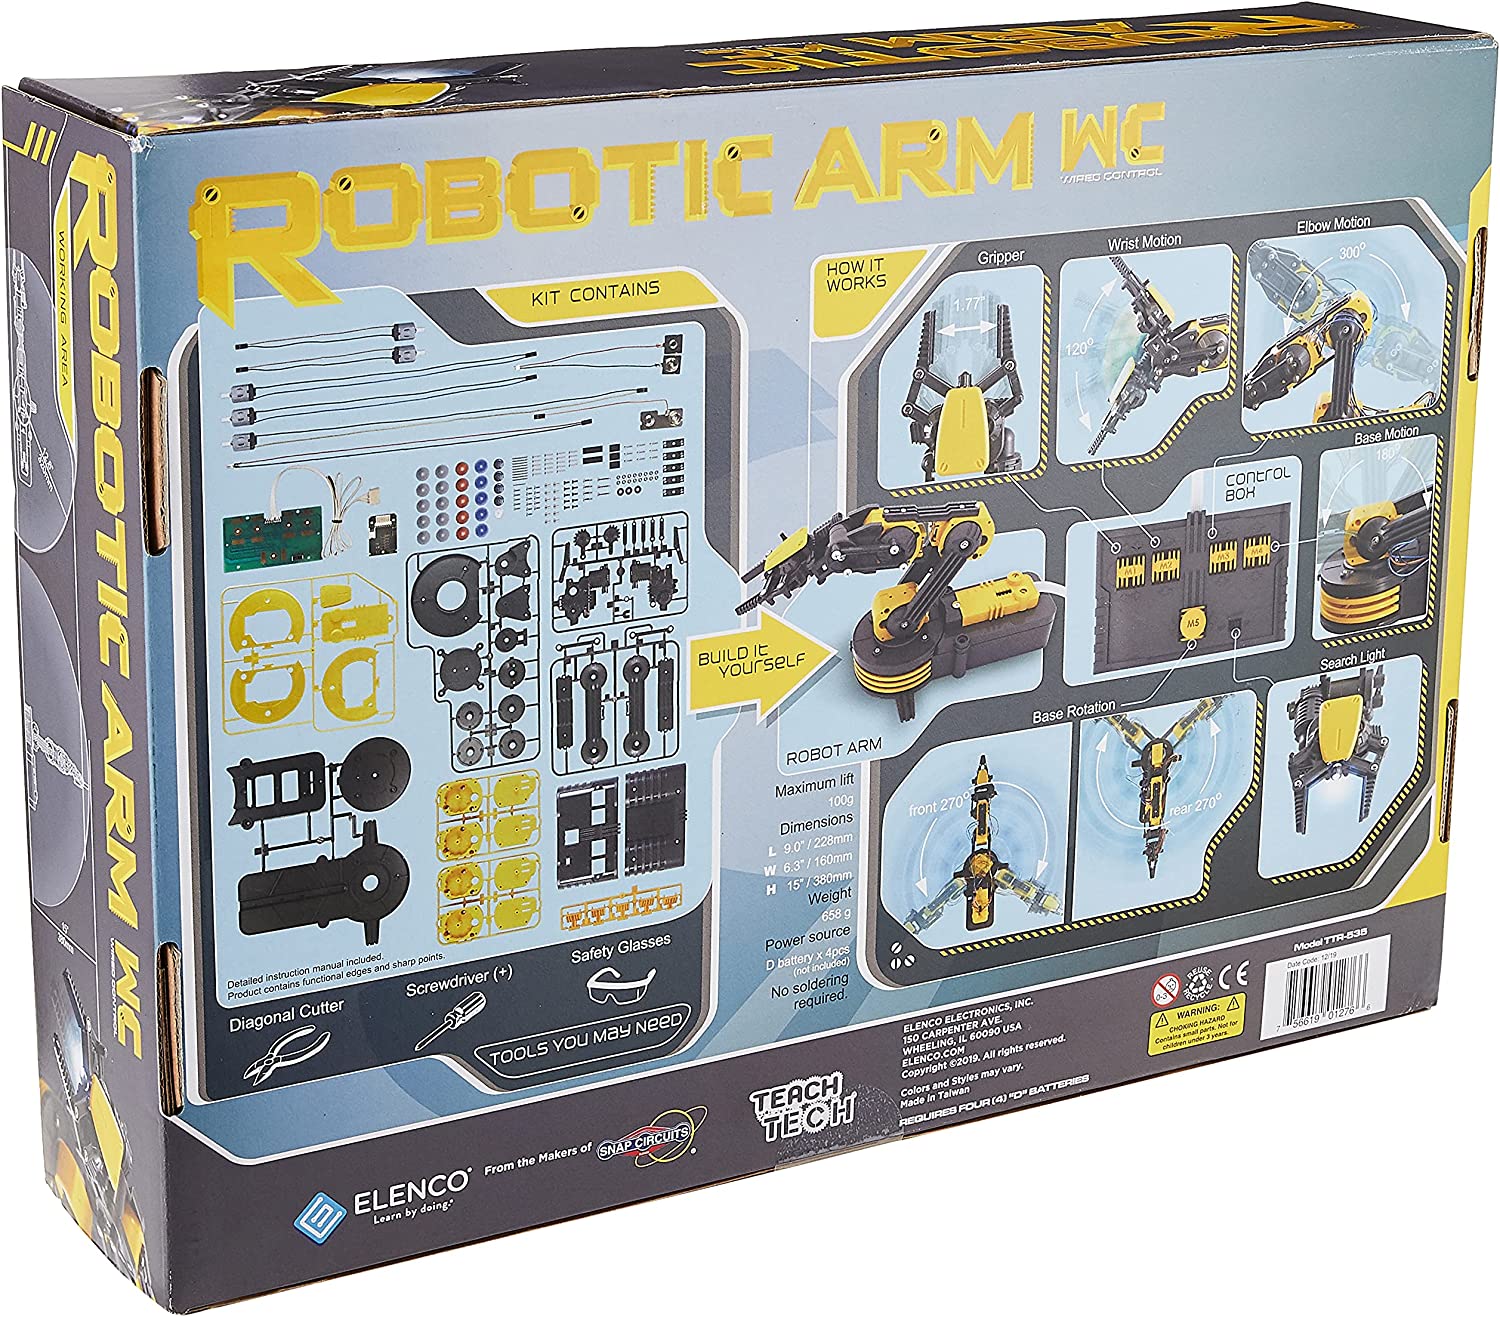 Elenco Teach Tech √É¬¢√¢‚Äö¬¨√Ö‚ÄúRobotic Arm Wire Controlled√É¬¢√¢‚Äö¬¨√Ç¬ù, Robotic Arm Kit, STEM Building Toys for Kids 12+